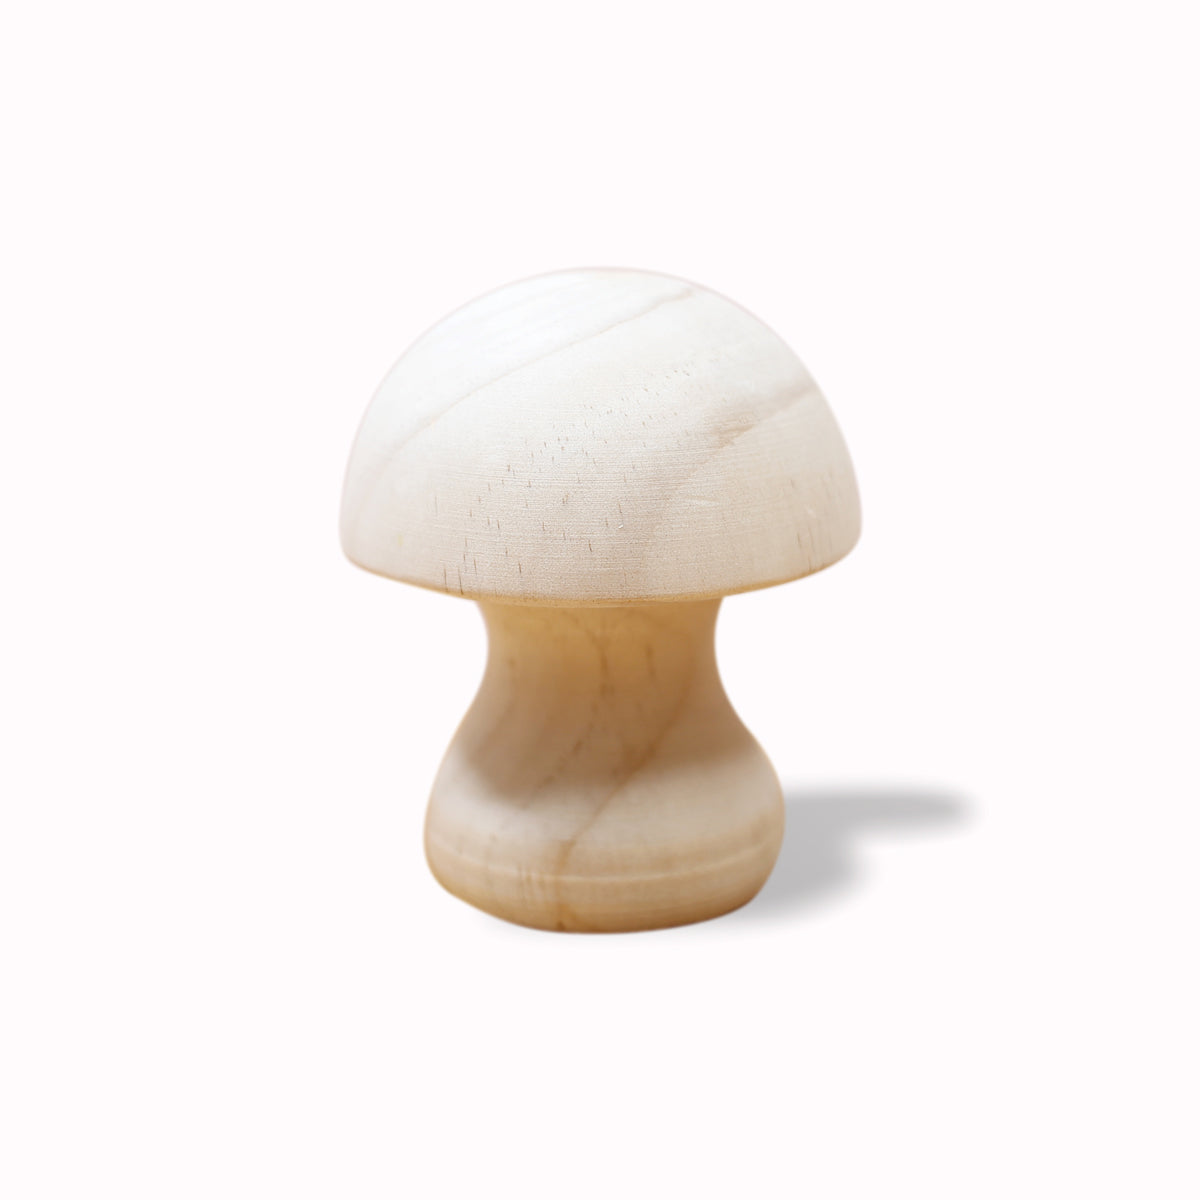 Wooden mushroom 松木菇